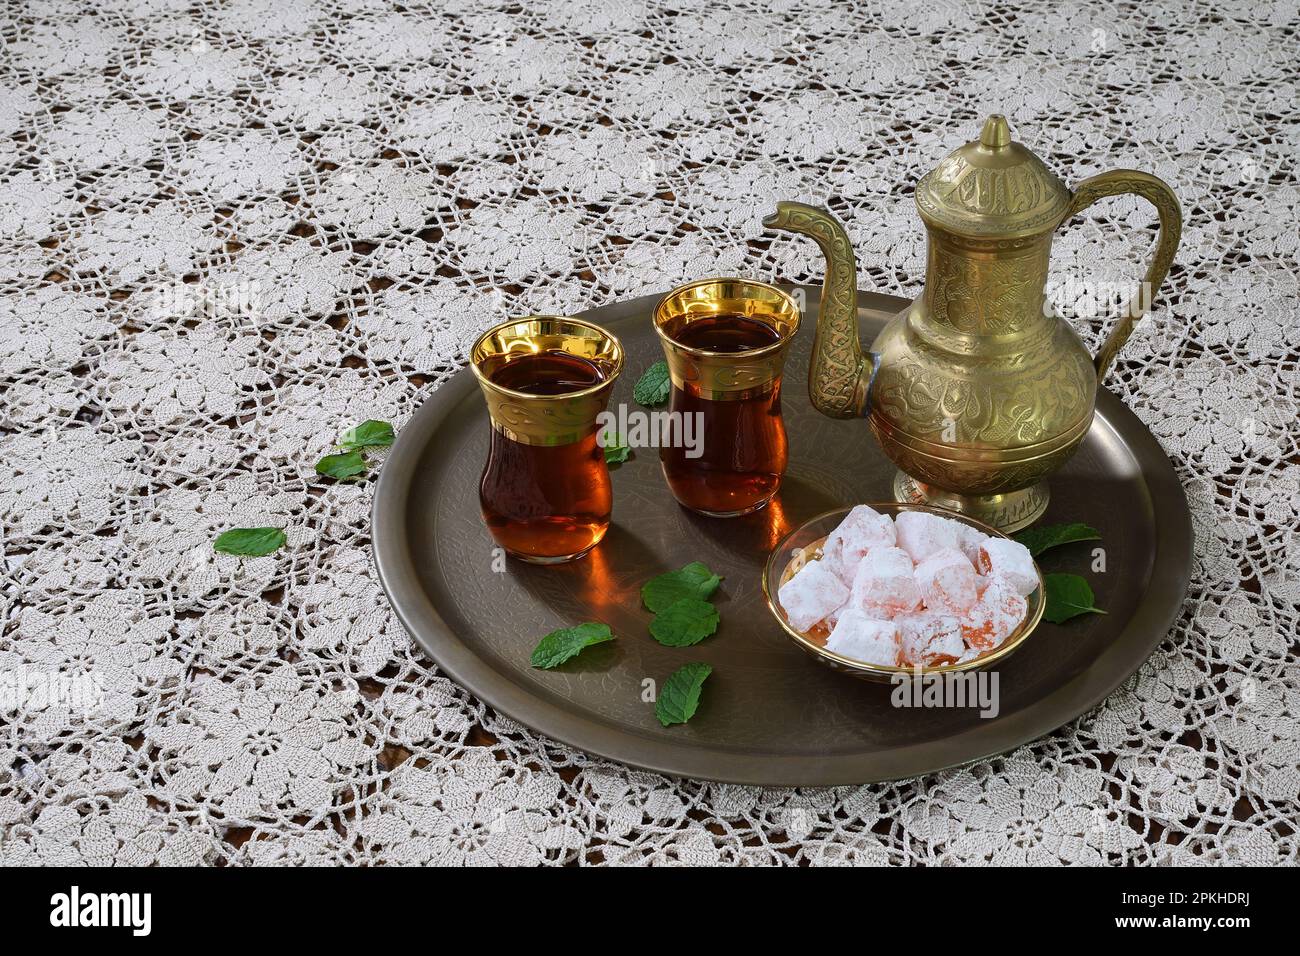 Eine klassische, feierliche, kunstvoll verzierte türkische Teekanne, zwei Gläser und traditionelle türkische Köstlichkeiten auf einem Tablett und weiße Tischdecke aus Spitze in sanfter Beleuchtung Stockfoto